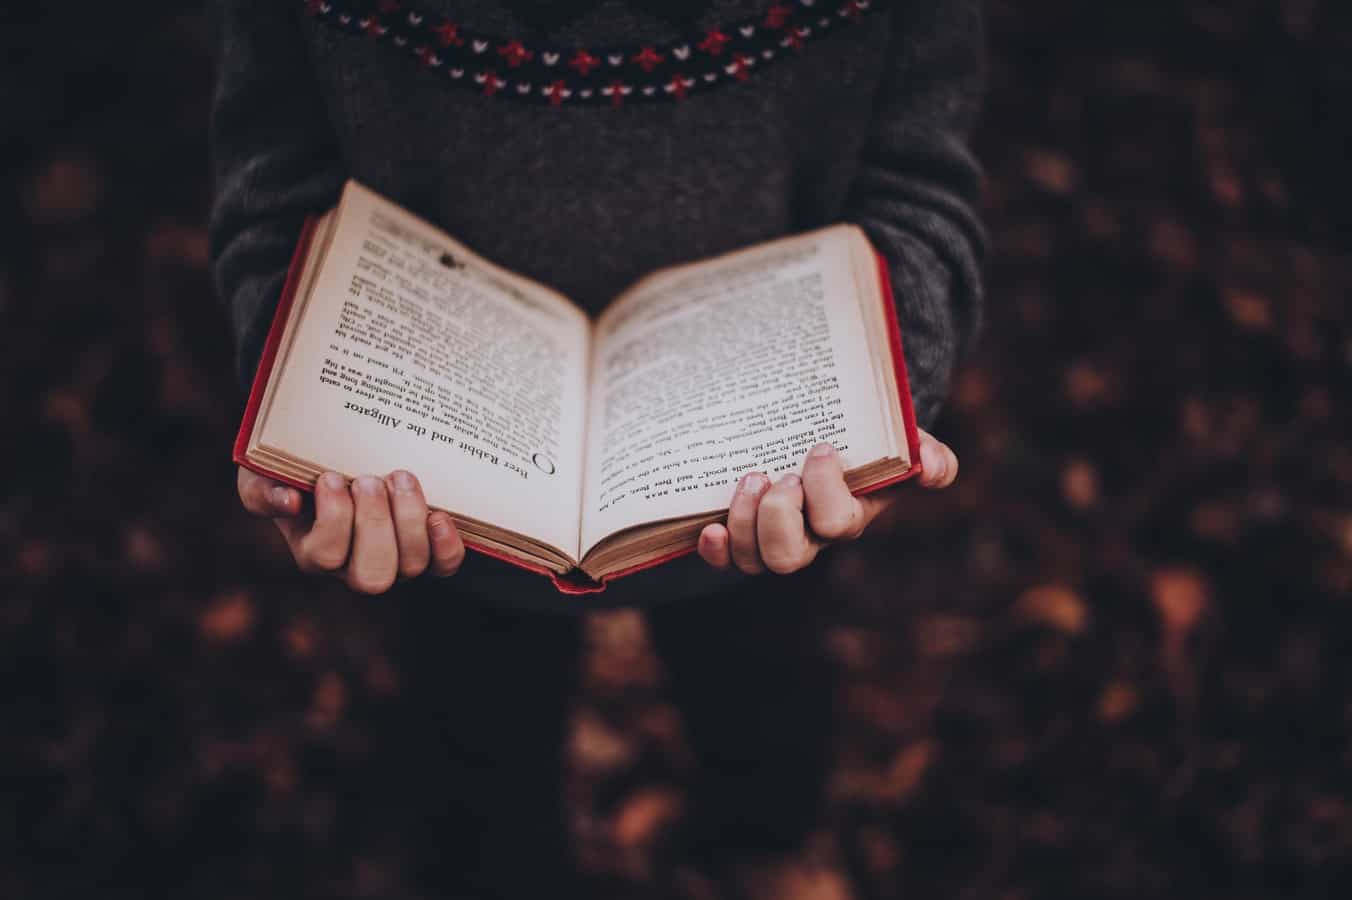 djevojka u puloveru čita knjigu crvenih korica.